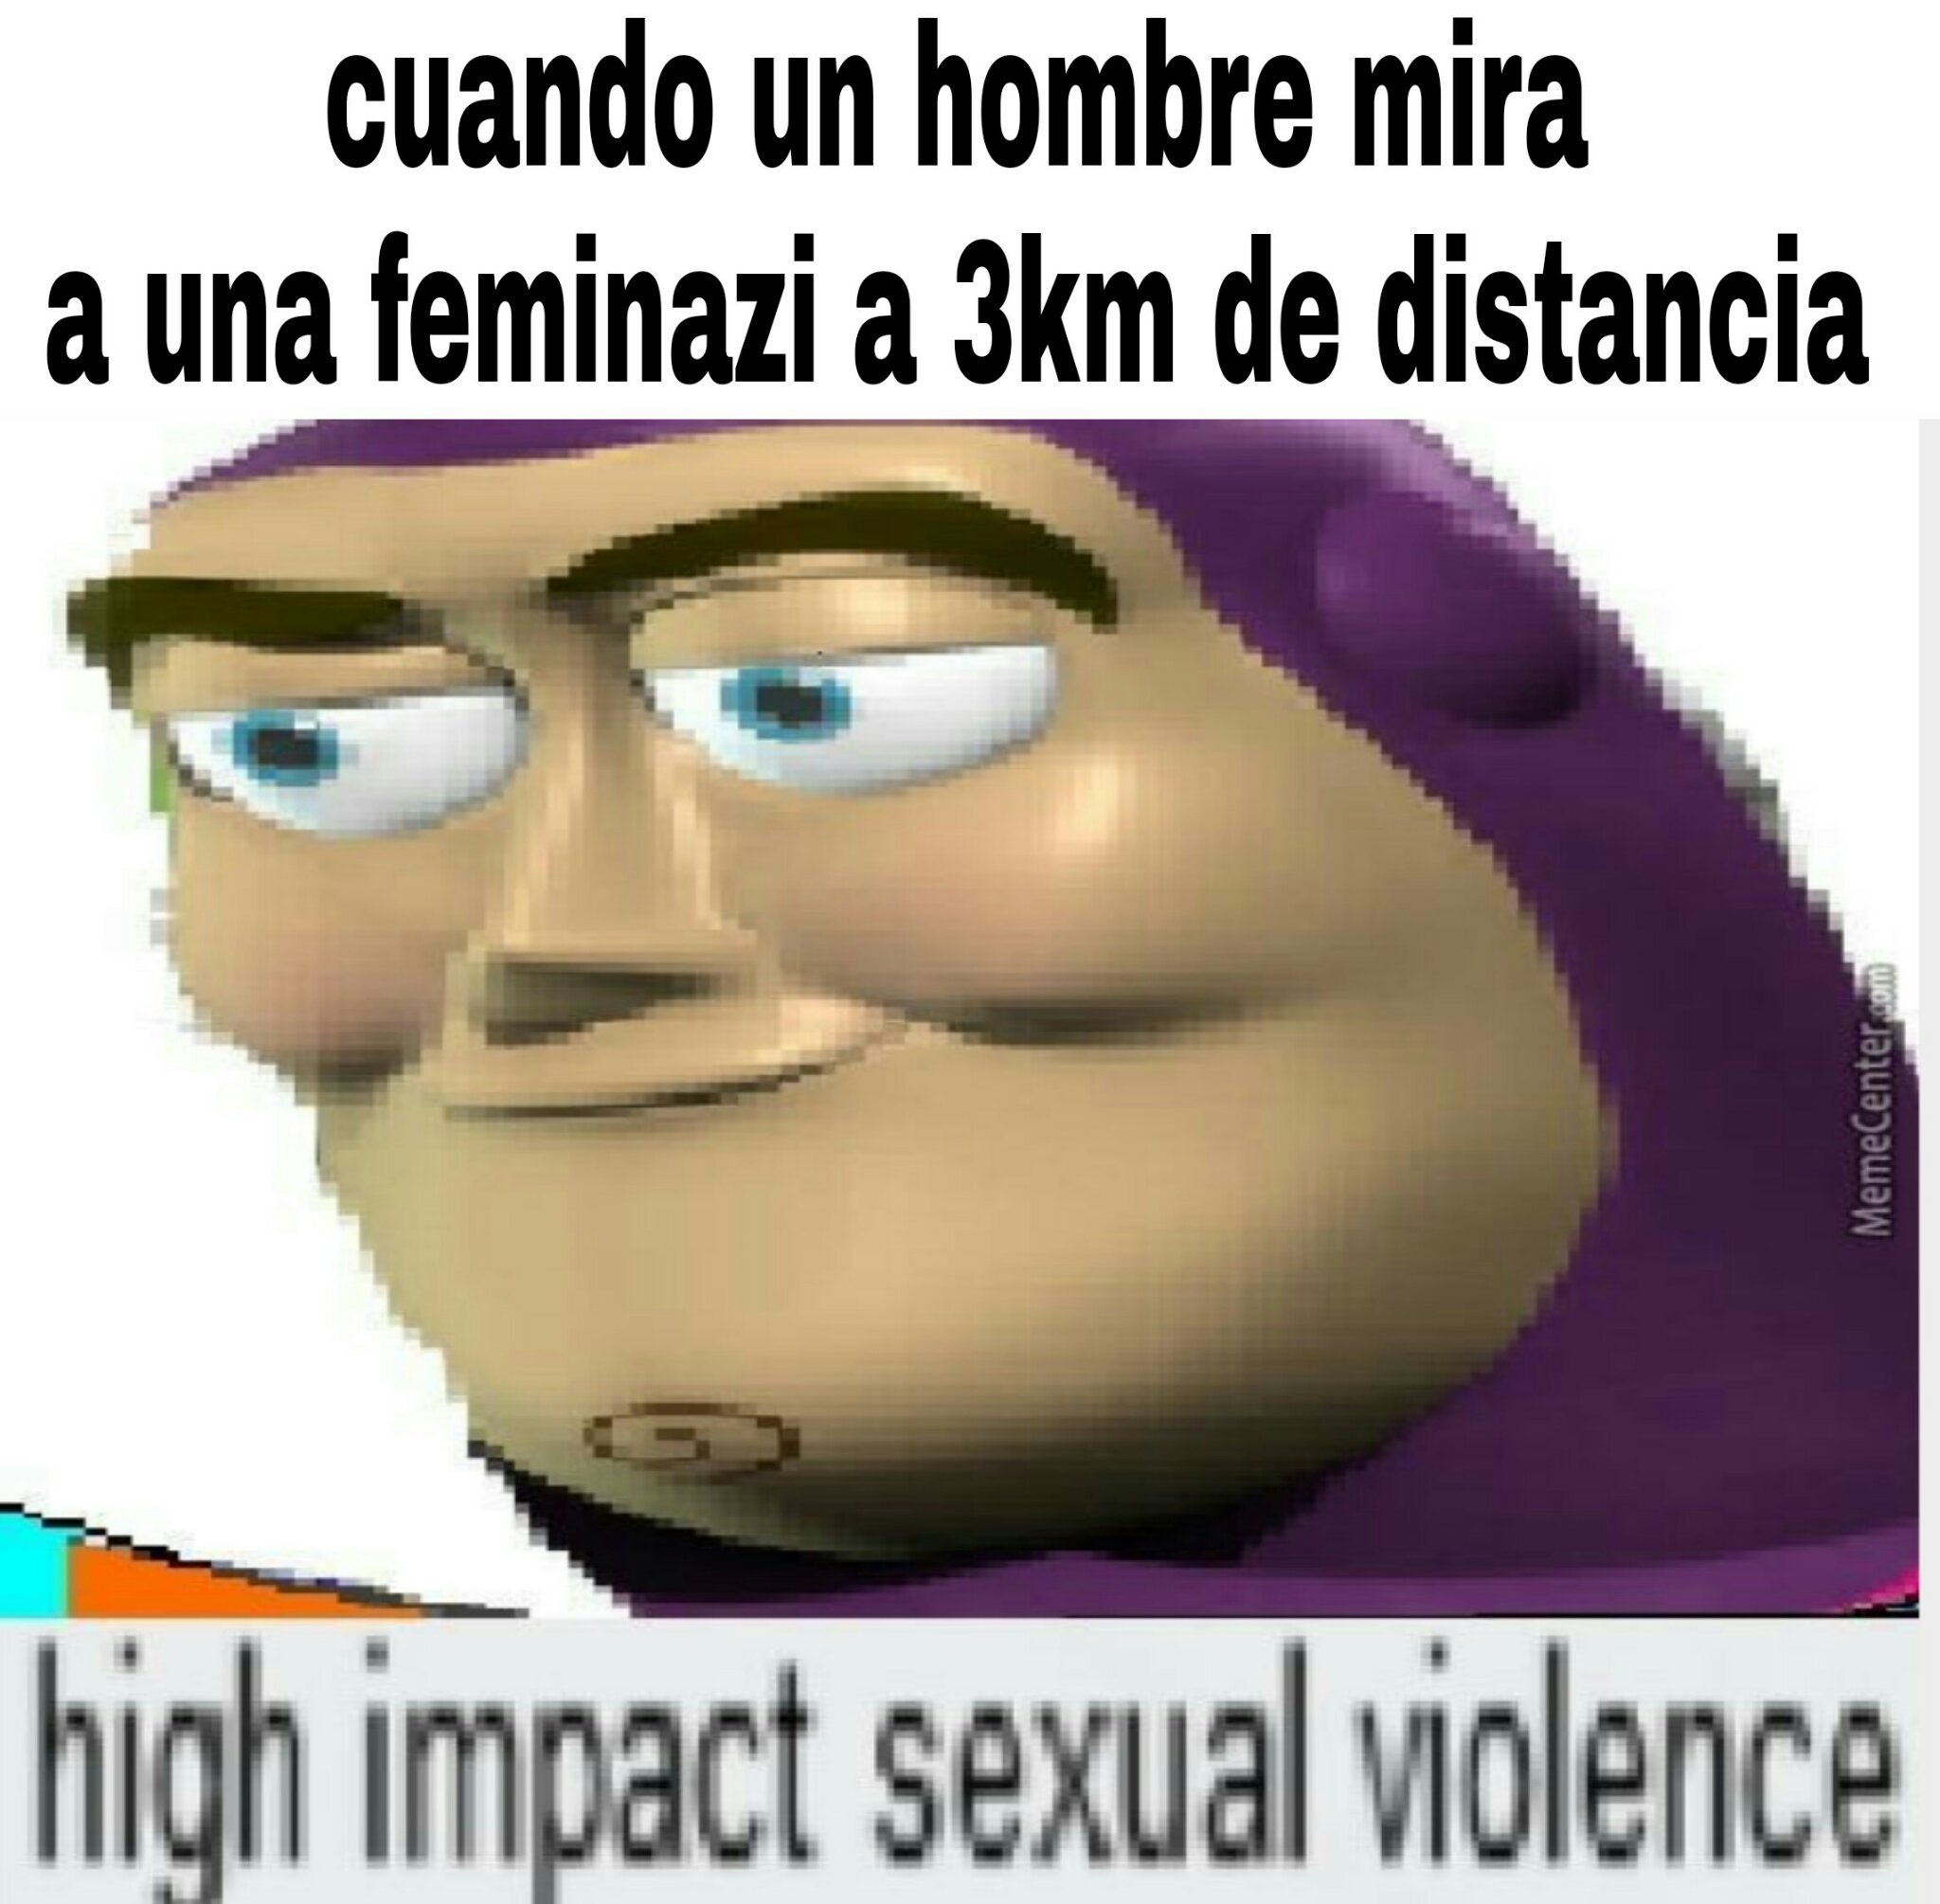 Alto impacto de violencia - meme